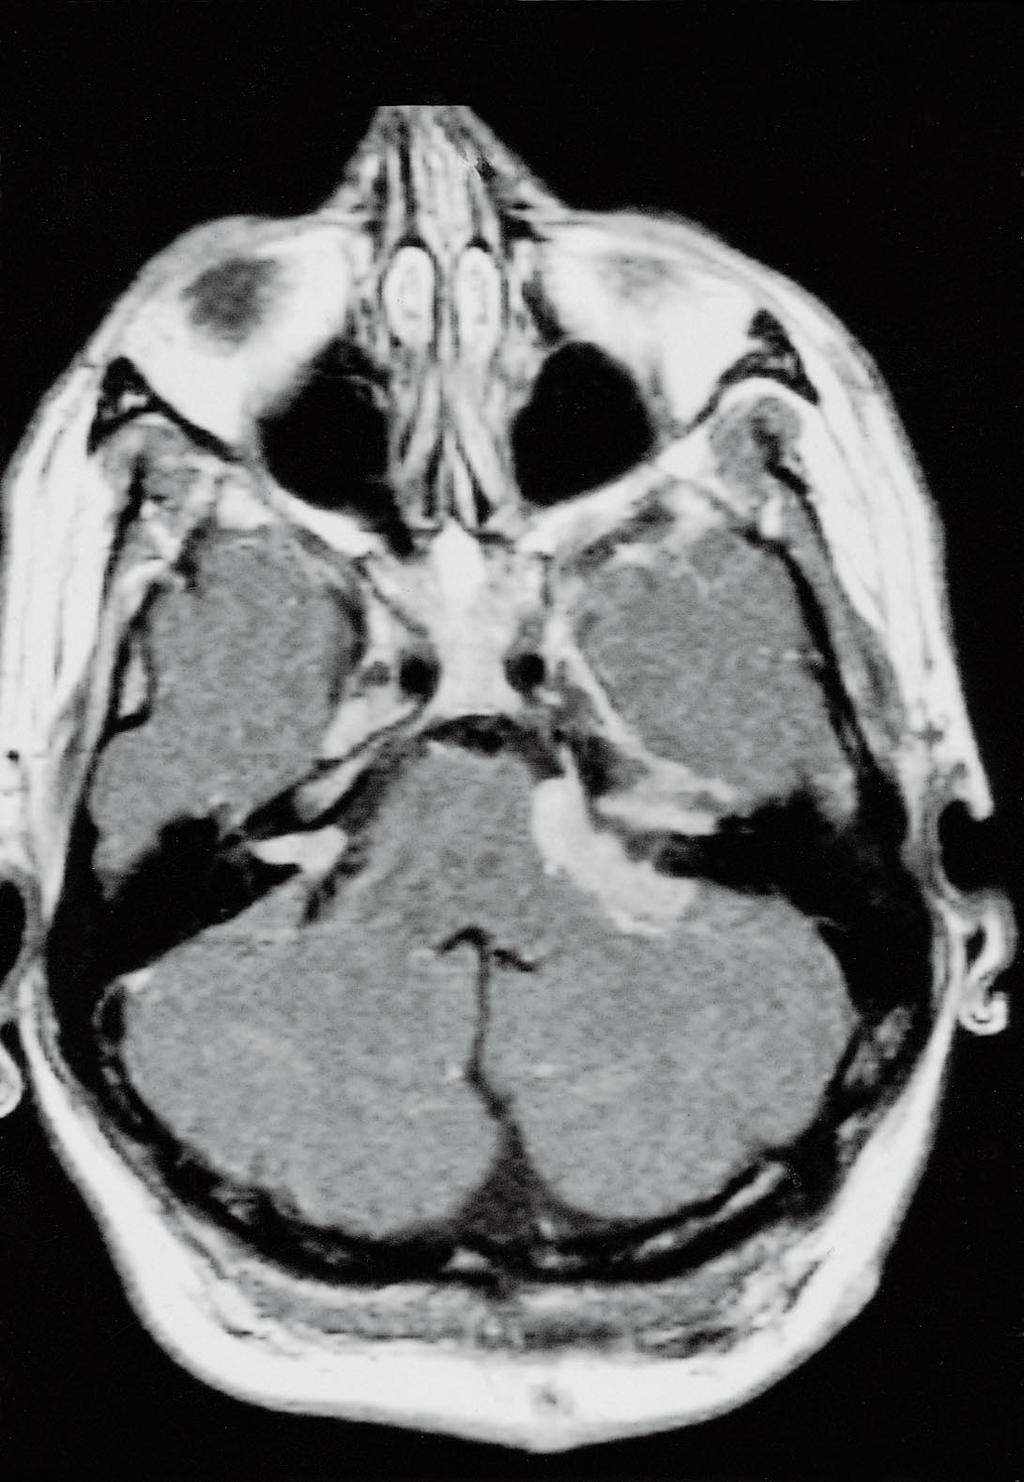 schwannoom meningeoom figuur 2. Transversale MRI-opname (T1-gedomineerd) van de schedelbasis van patiënt D na toediening van gadoliniumcontrastmiddel.